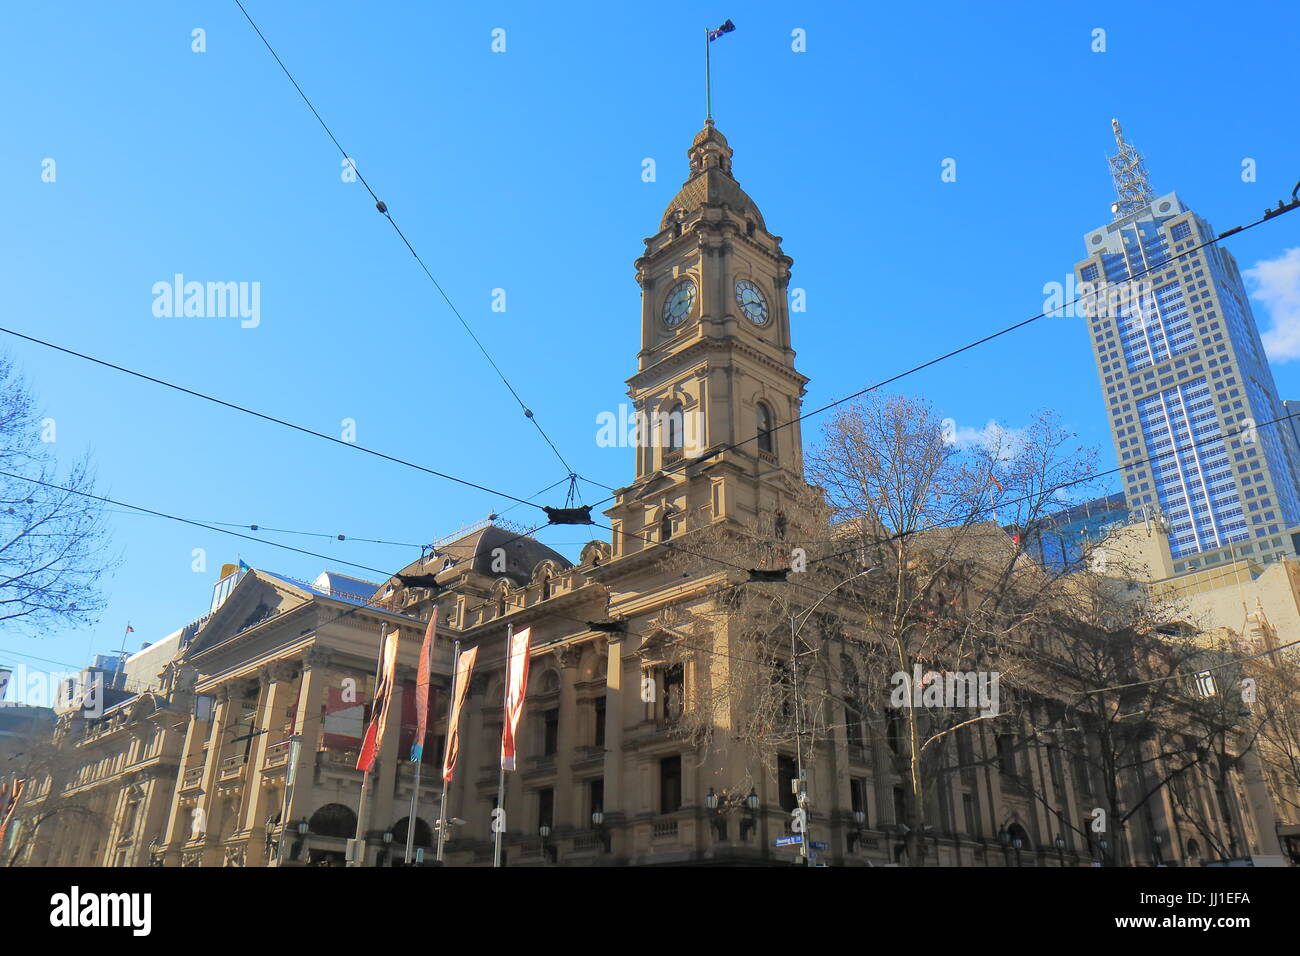 L'architecture historique de l'Hôtel de ville de Melbourne Australie Banque D'Images